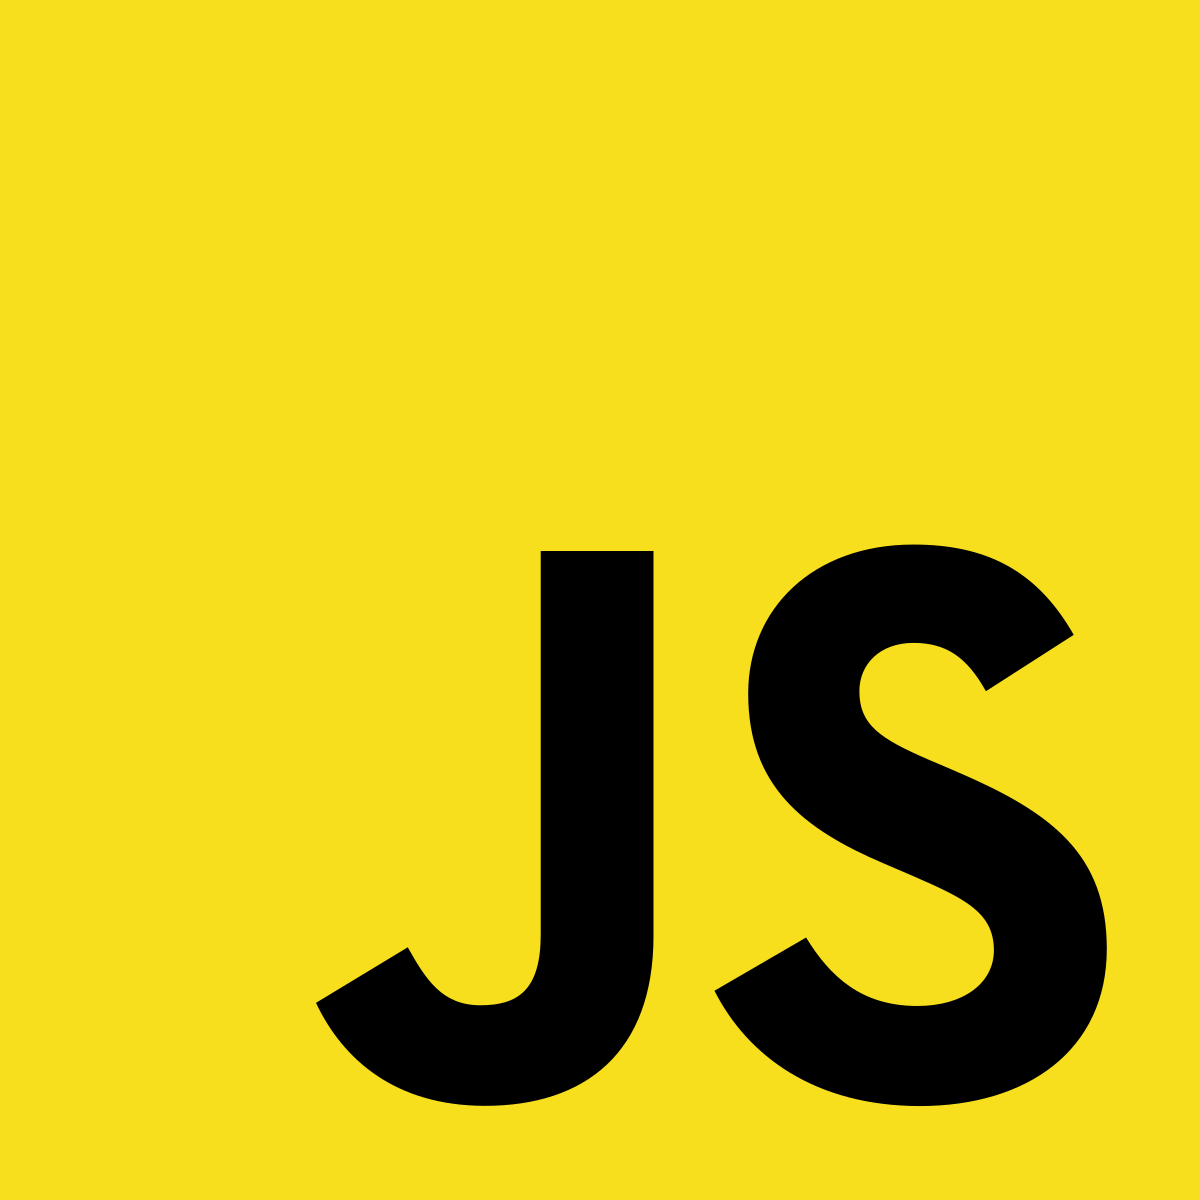 JS/jQuery — Filtre e transforme arrays com filter/grep e map